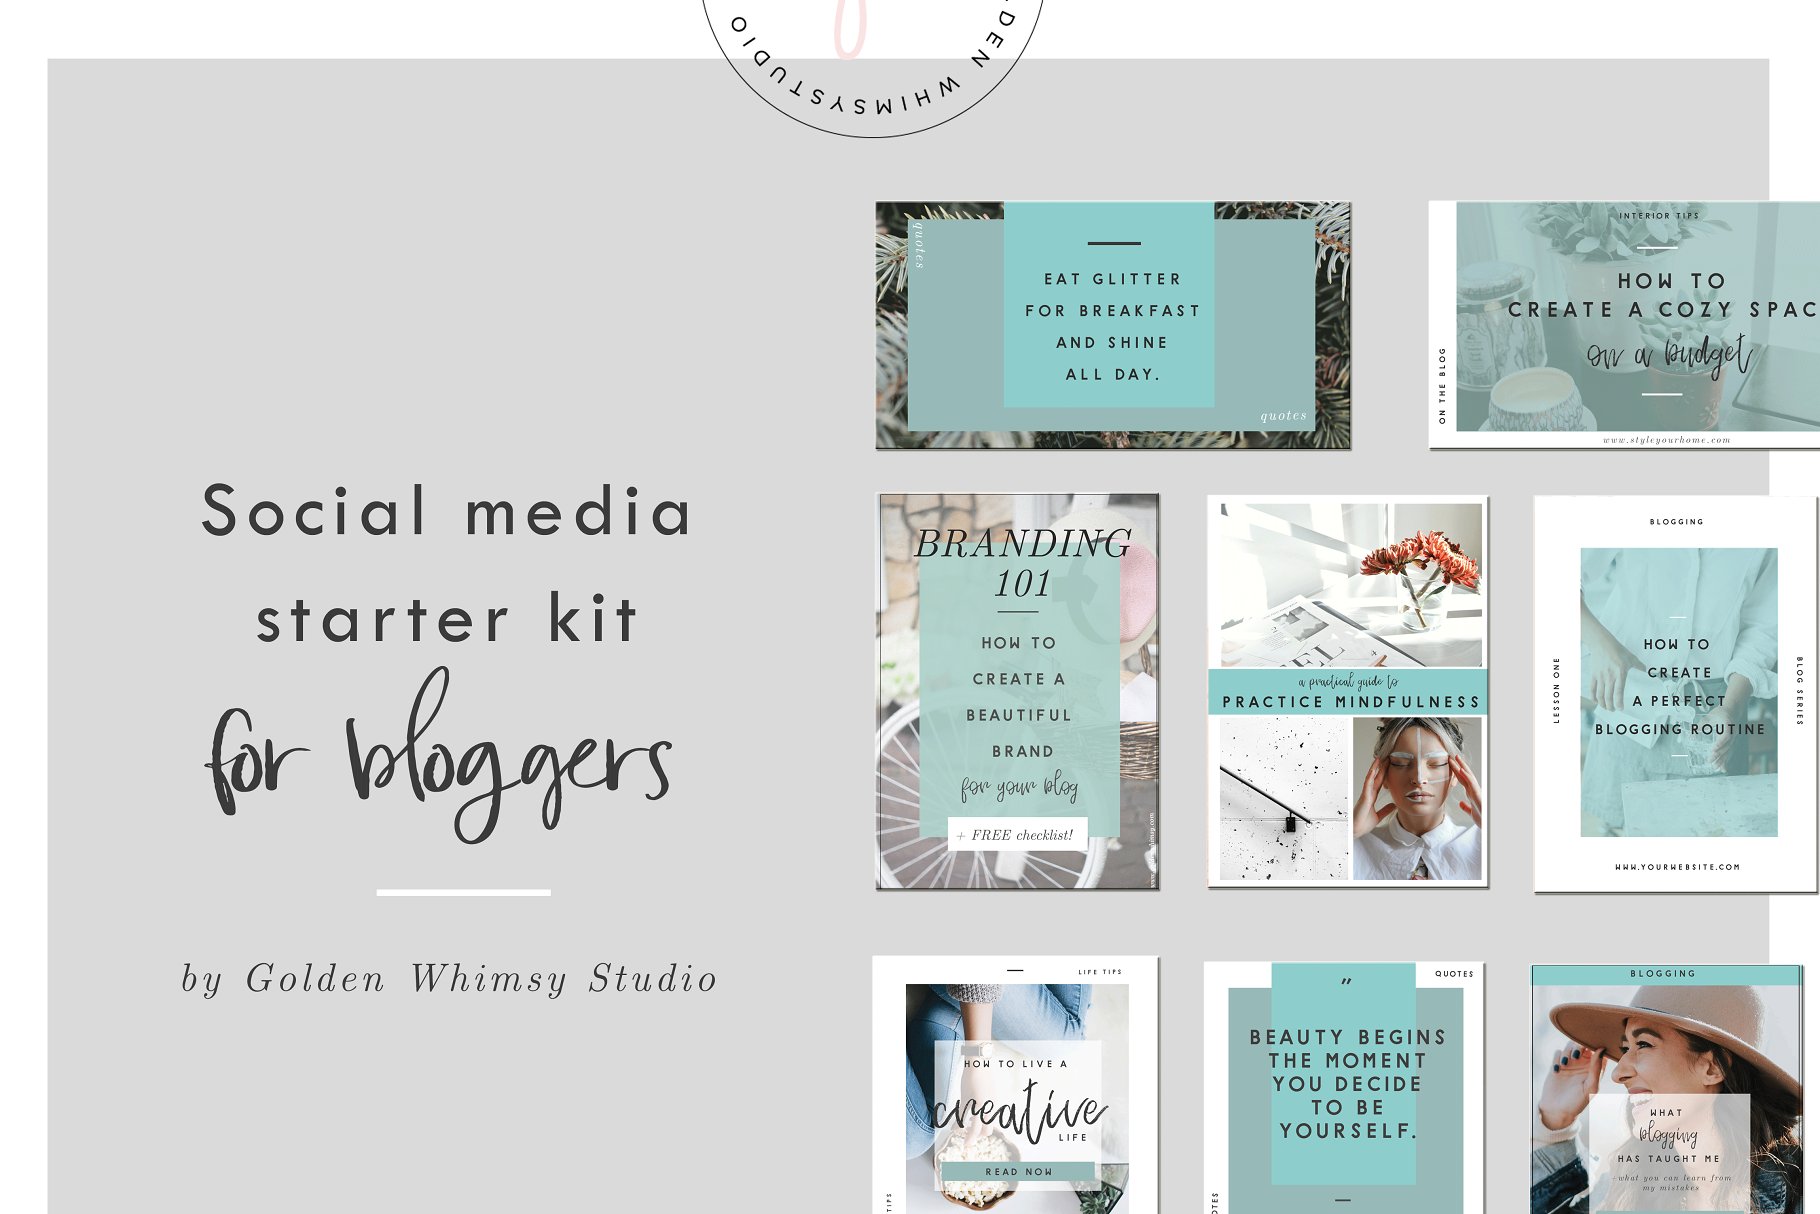 博主社交媒体配图插图设计模板大洋岛精选 Blogger’s social media starter kit插图